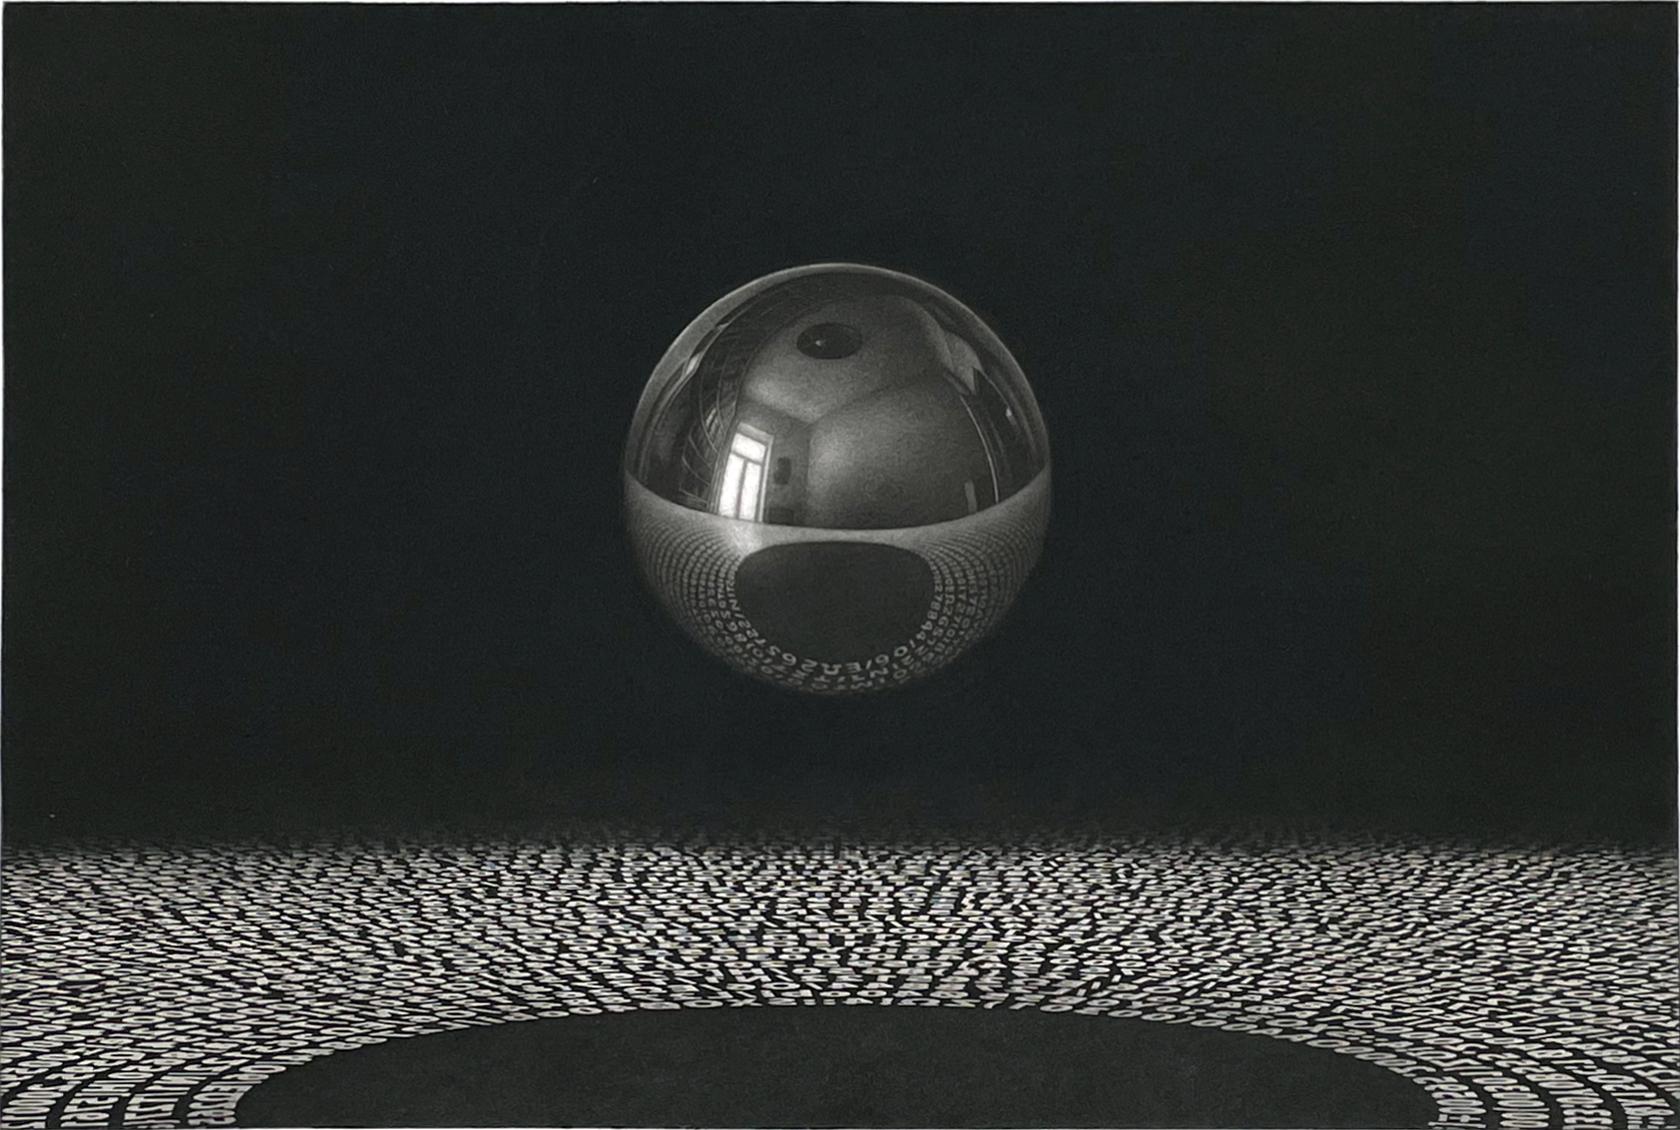 Medium: Mezzotinto und Aquatinta
Jahr: 2014
Auflage: 30, mit Bleistift signiert.
Bildgröße: 12 x 15,75 Zoll
Signiert, betitelt und nummeriert vom Künstler.

Die Illusionen und Spiegelungen in Sietins Drucken bringen M.C. Escher in den Sinn, aber